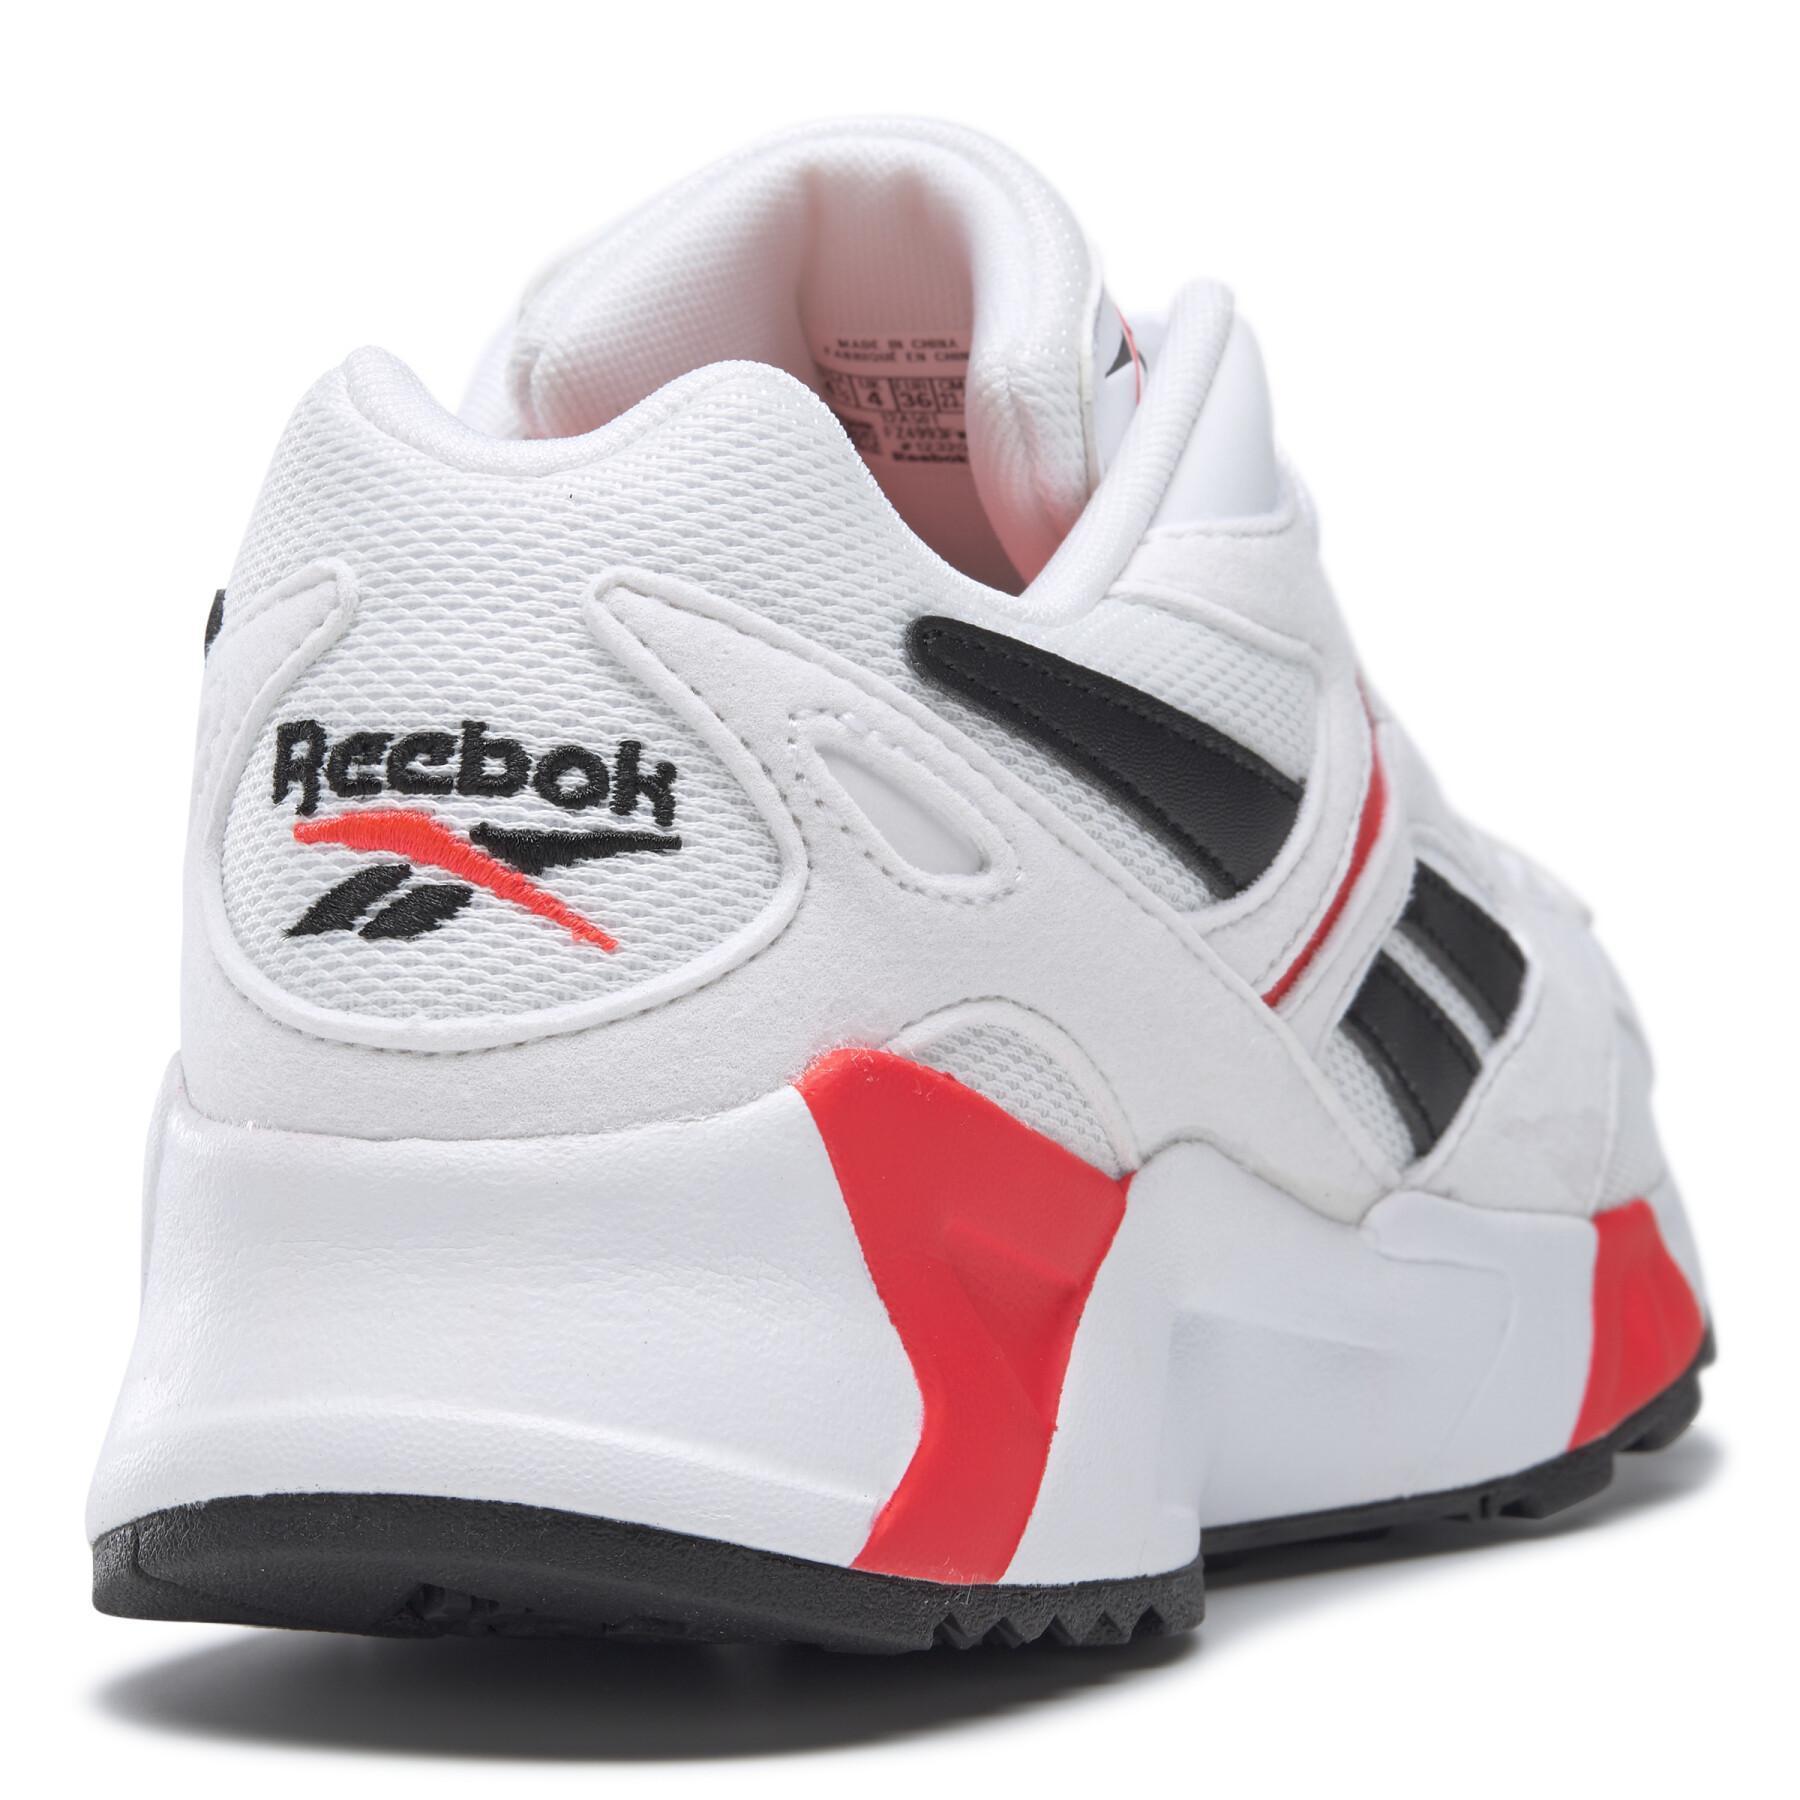 Children's sneakers Reebok Classics Aztrek 96